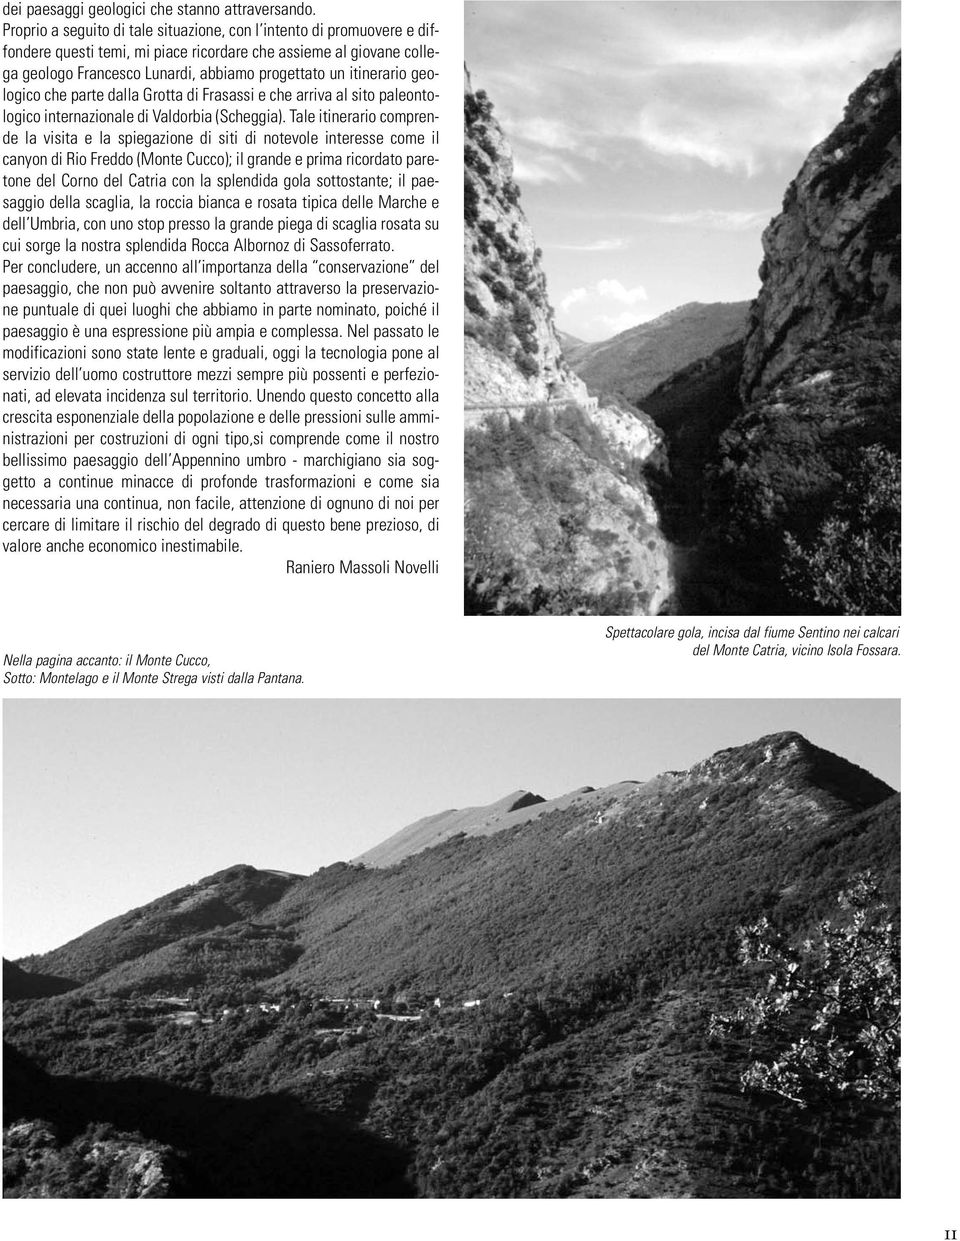 itinerario geologico che parte dalla Grotta di Frasassi e che arriva al sito paleontologico internazionale di Valdorbia (Scheggia).